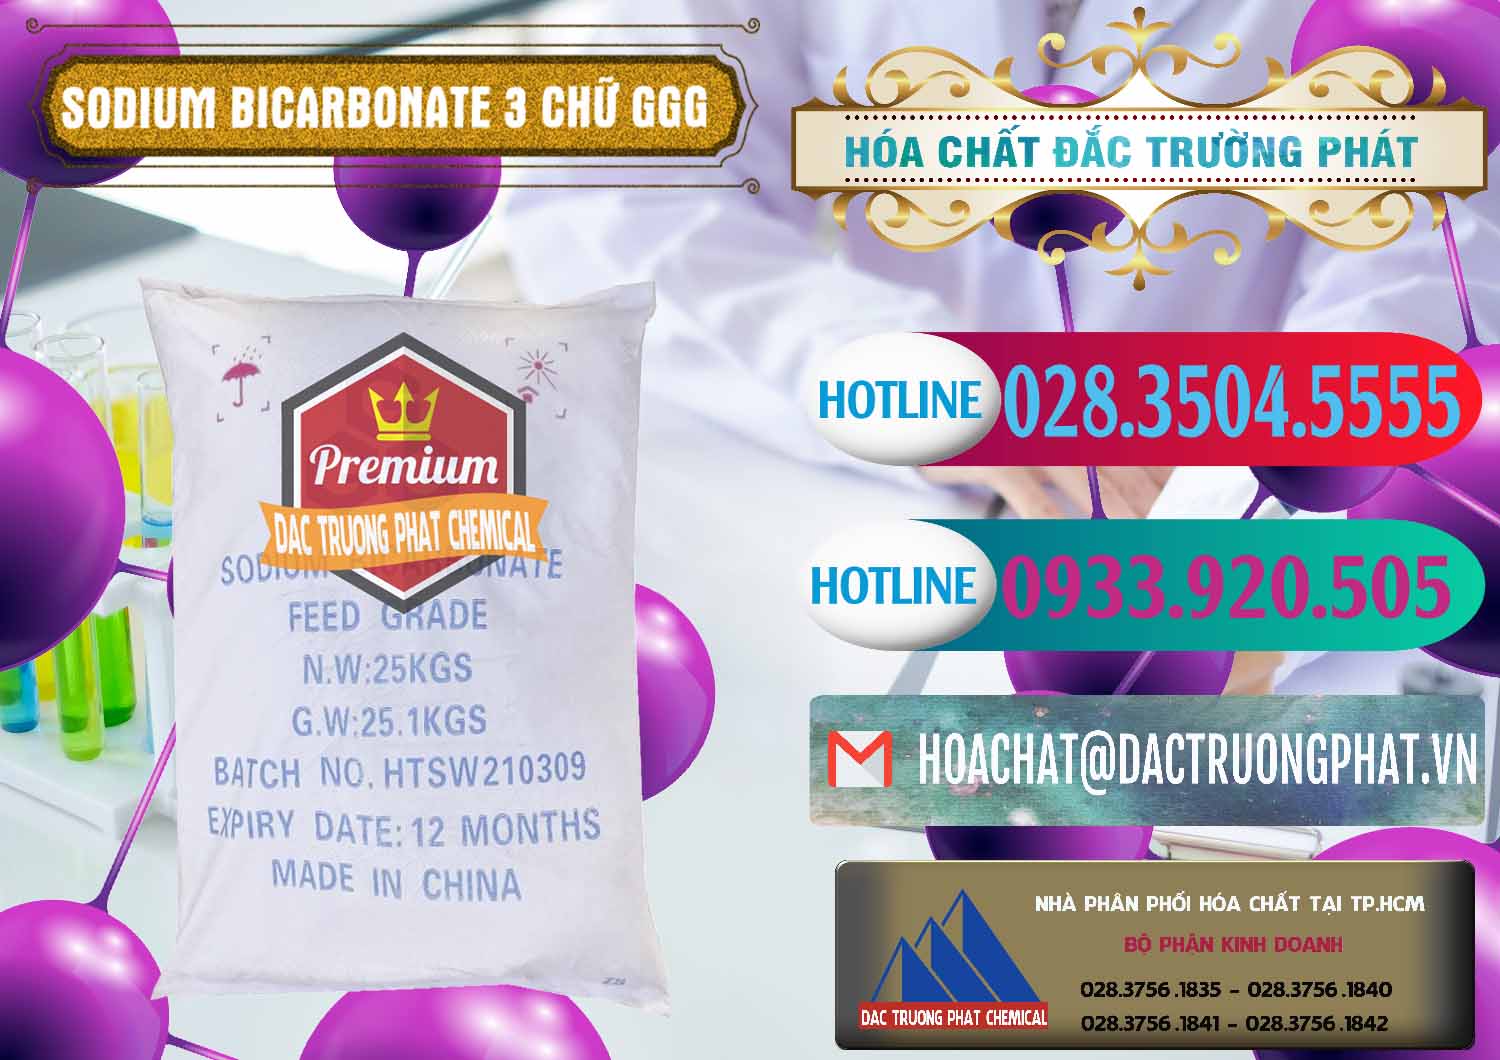 Đơn vị chuyên nhập khẩu và bán Sodium Bicarbonate – Bicar NaHCO3 Food Grade 3 Chữ GGG Trung Quốc China - 0259 - Cty kinh doanh ( phân phối ) hóa chất tại TP.HCM - truongphat.vn